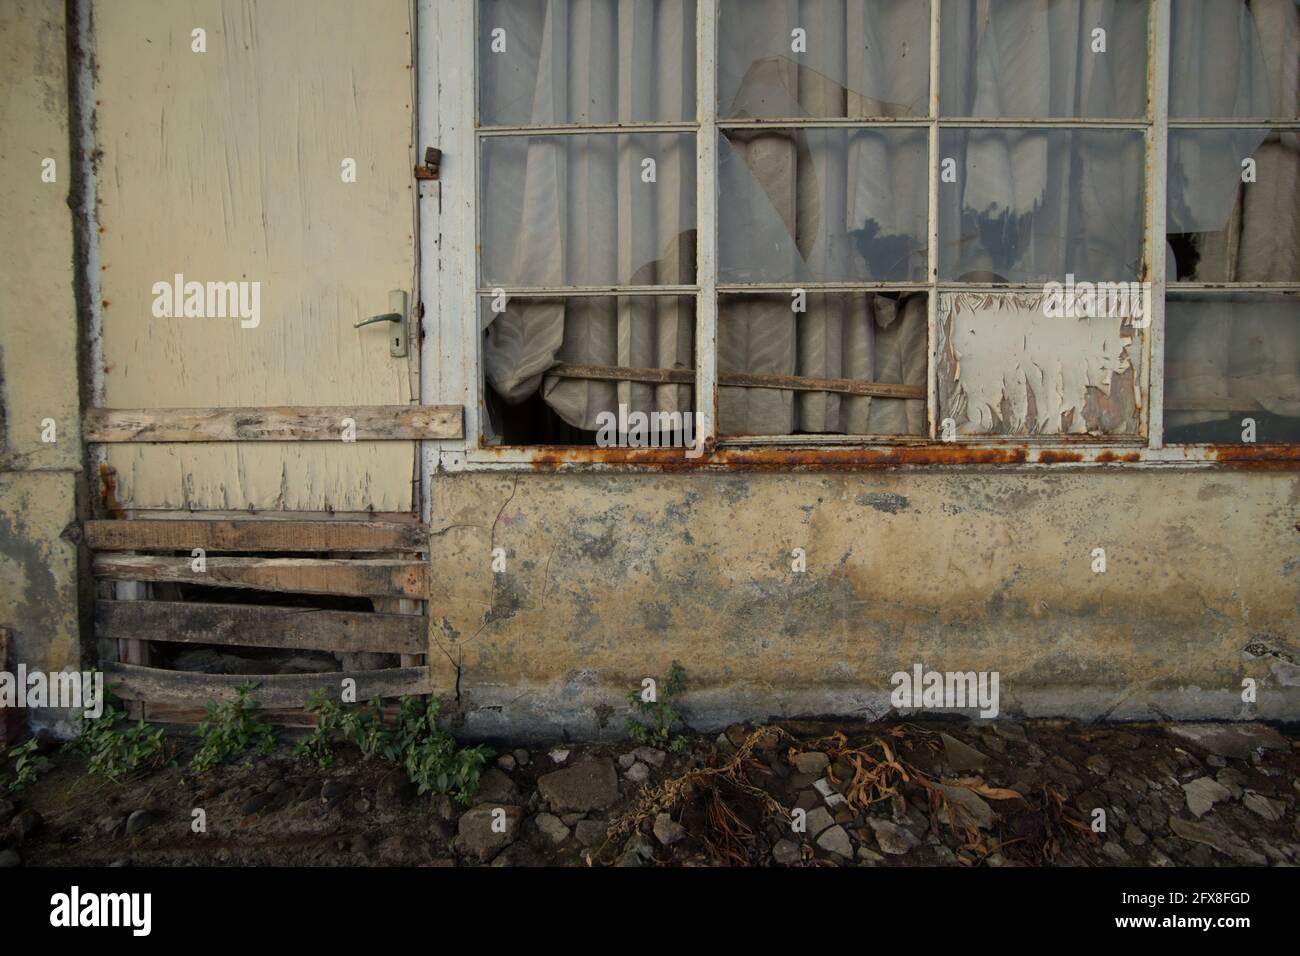 Partie d'une gare abandonnée à Semarang, Central Java, Indonésie. Situé en partie sur la zone côtière avec un certain nombre de canaux et de rivière, Semarang a souffert de l'affaissement des terres et des inondations côtières. Banque D'Images